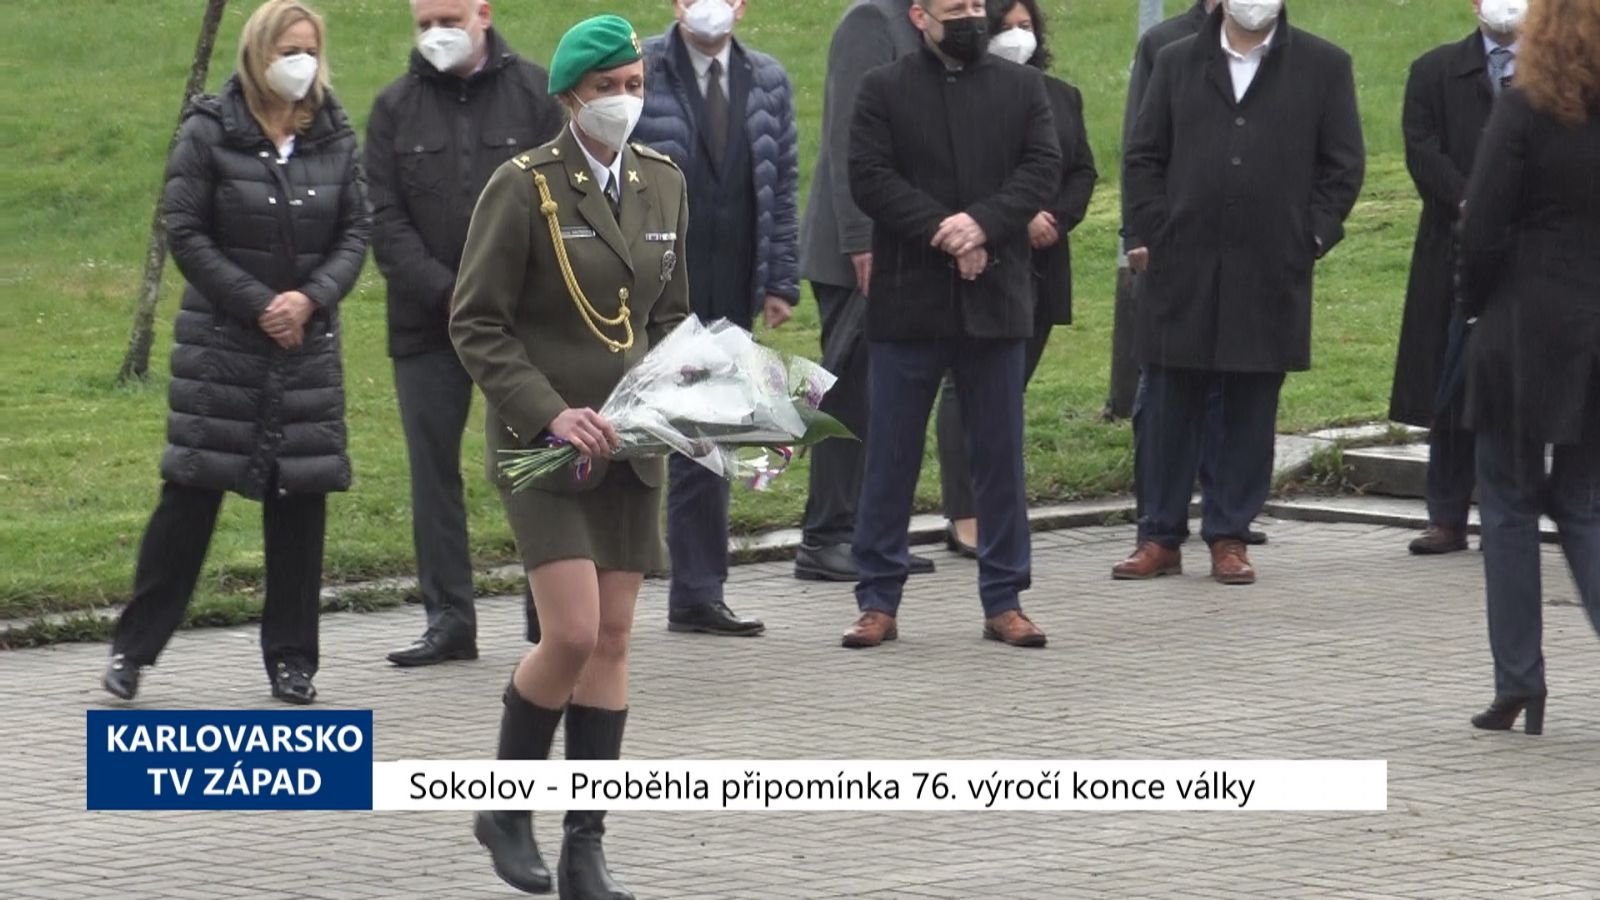 Sokolov: Proběhla připomínka 76. výročí konce války (TV Západ)